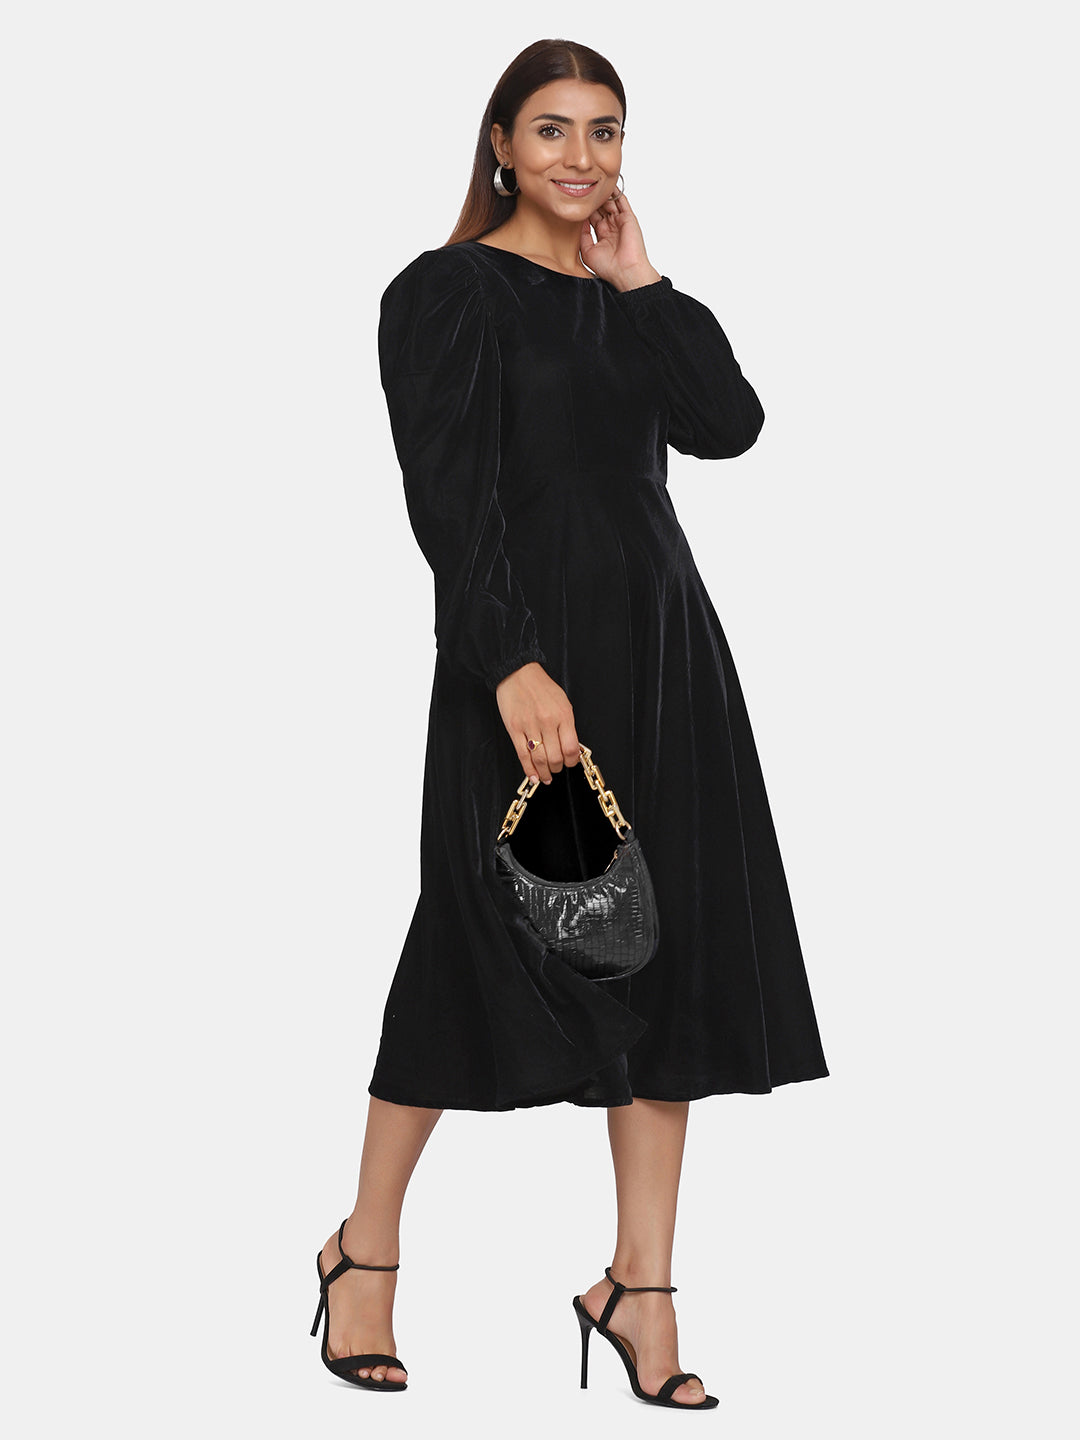 Velvet Evening Dress for Women - Black